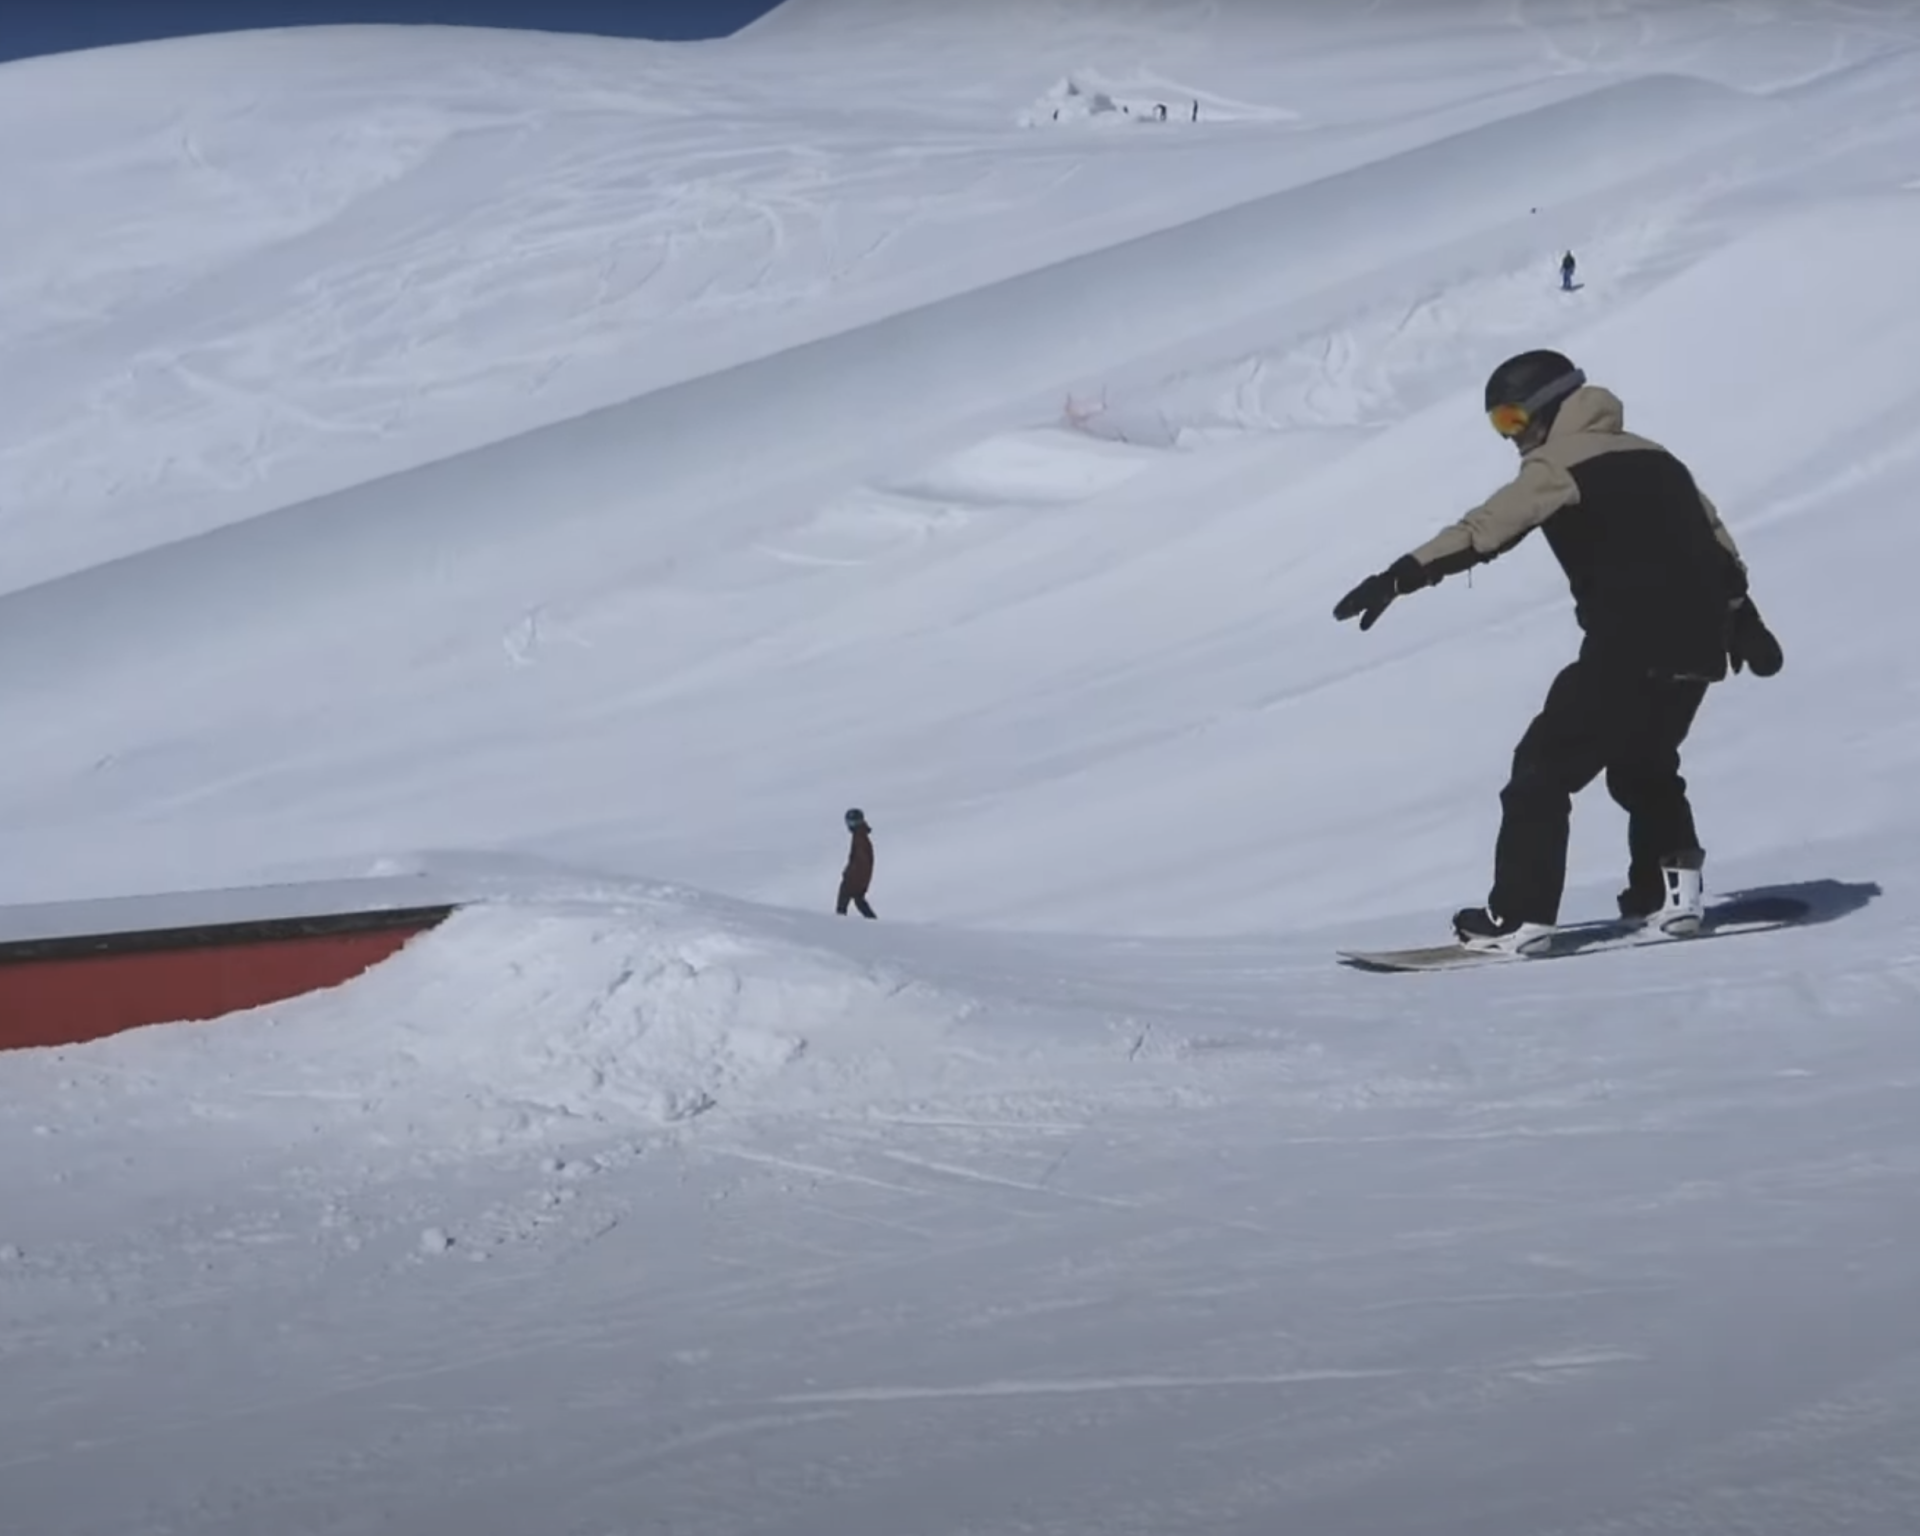 Comment faire un boardslide en snowboard ?